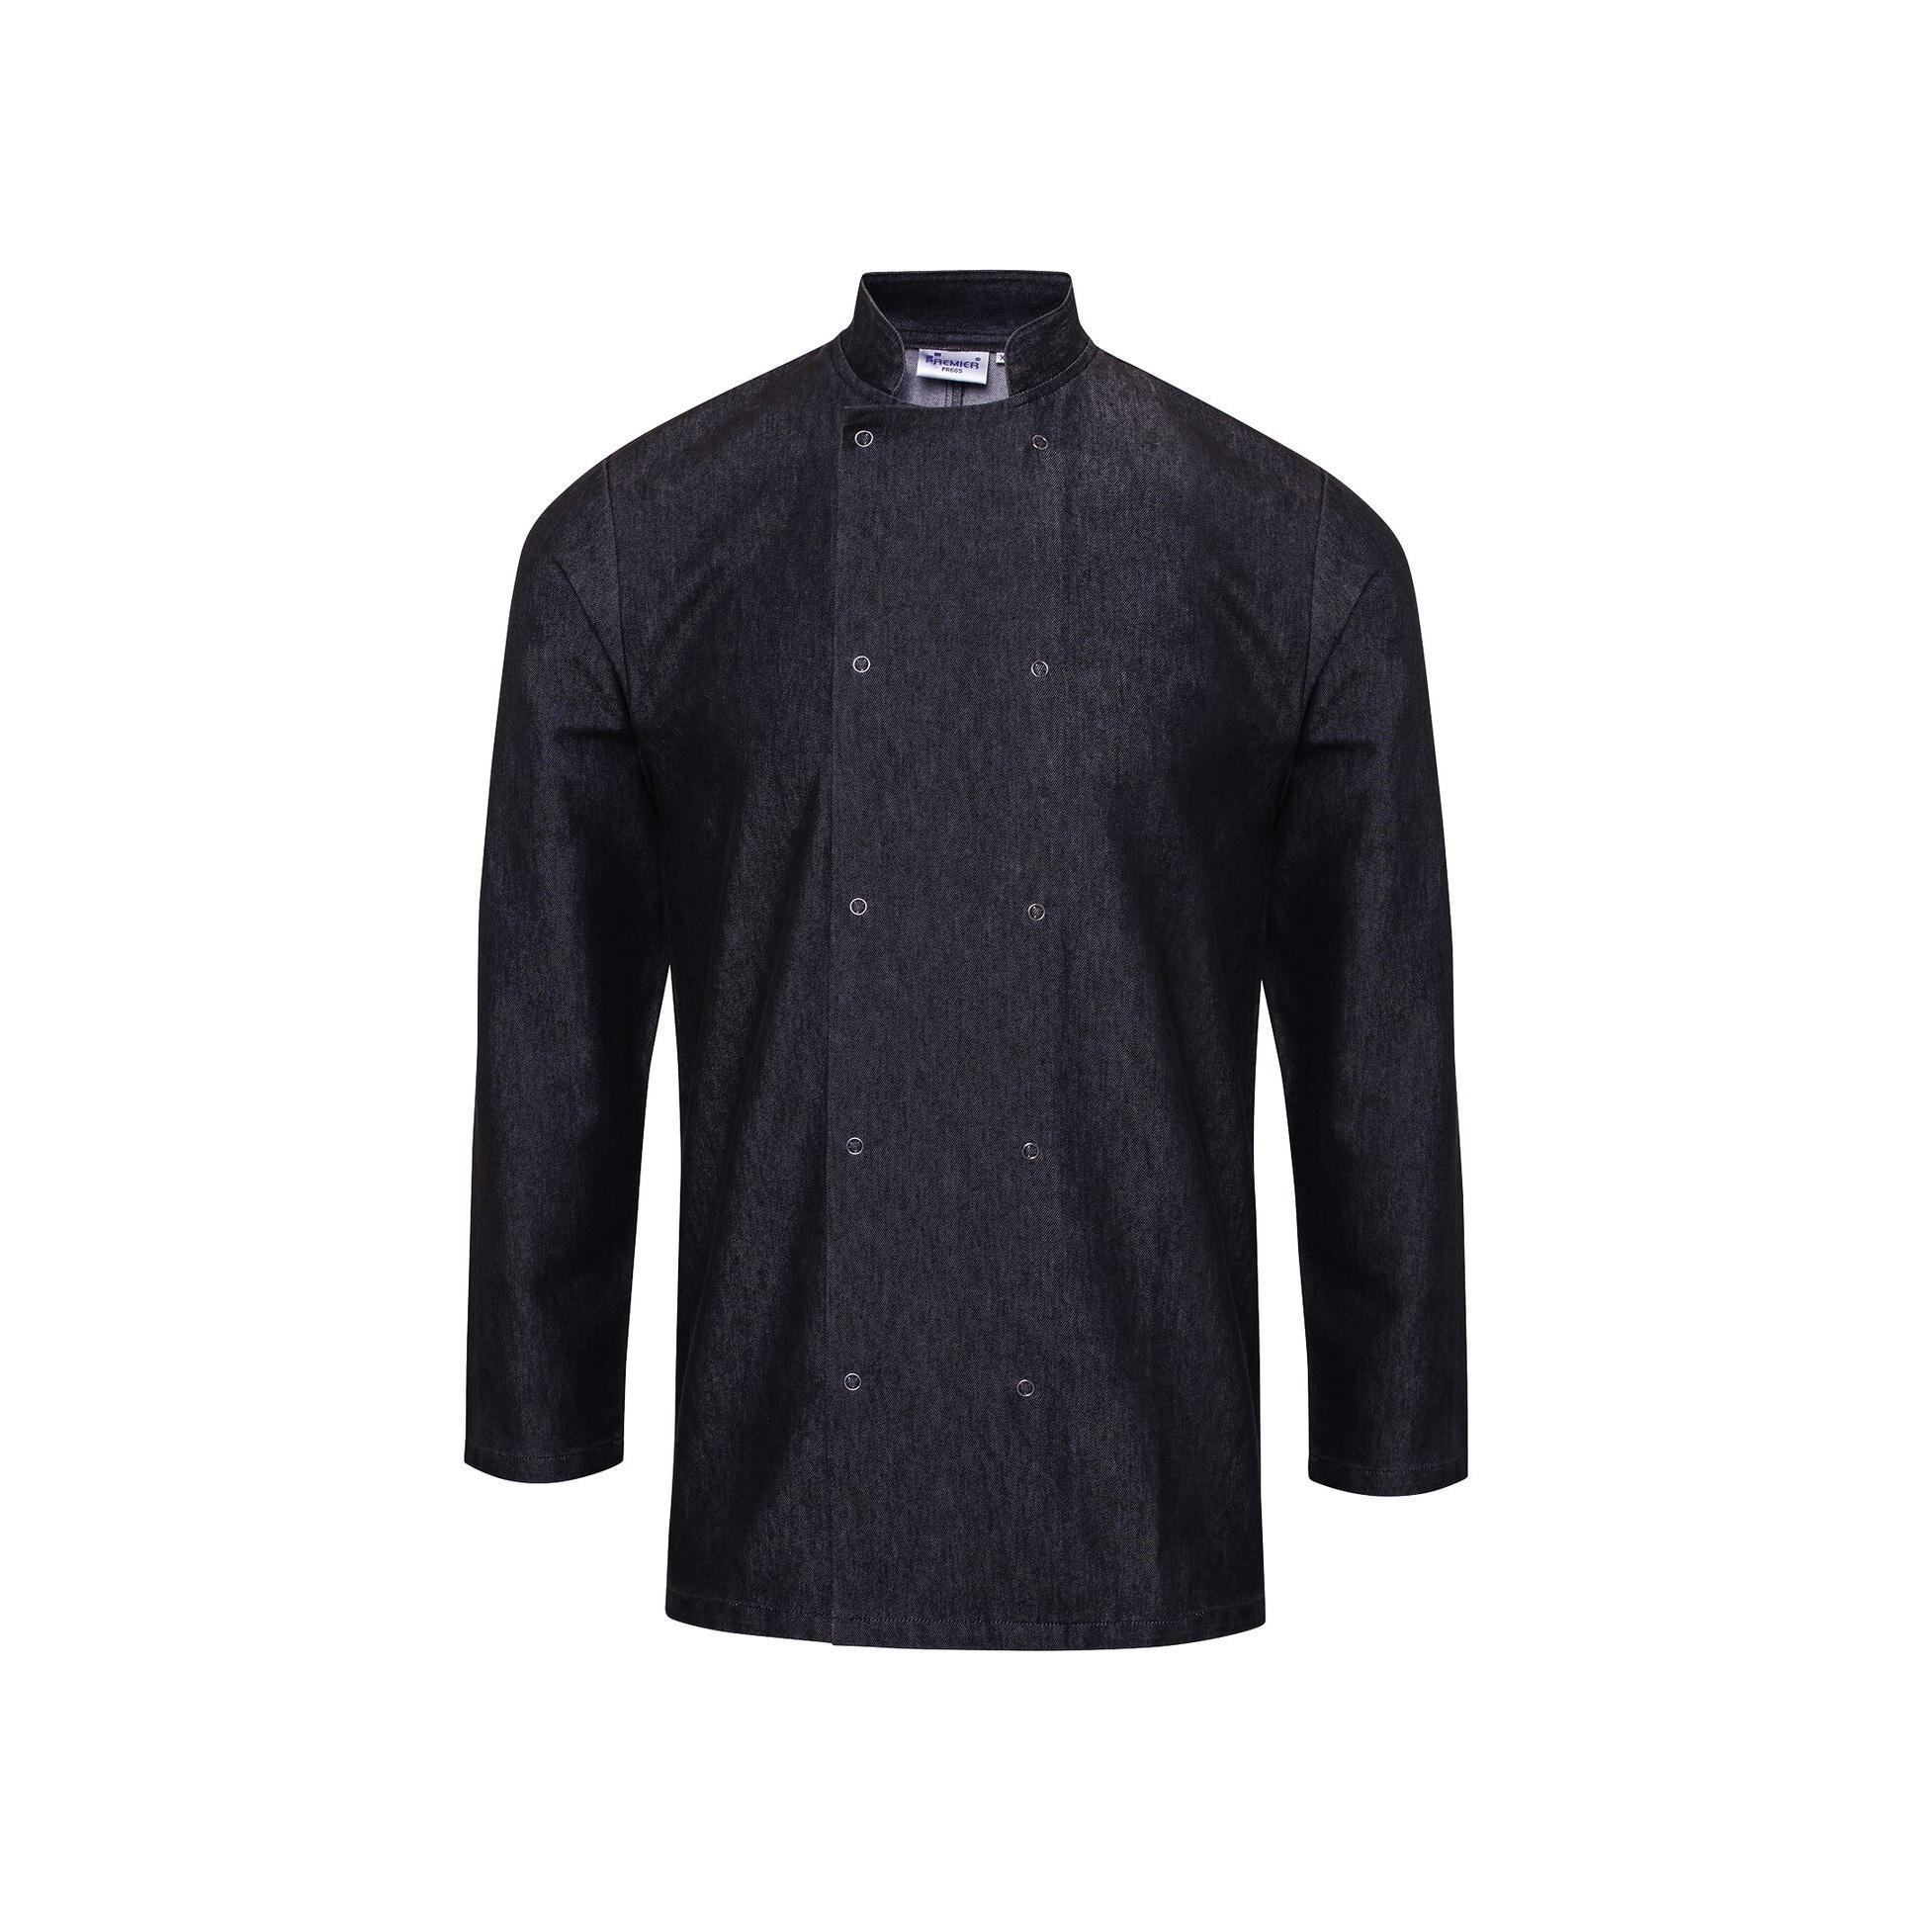 Premier Unisex Denim Chefs Jacket (Black Denim) (3XL)